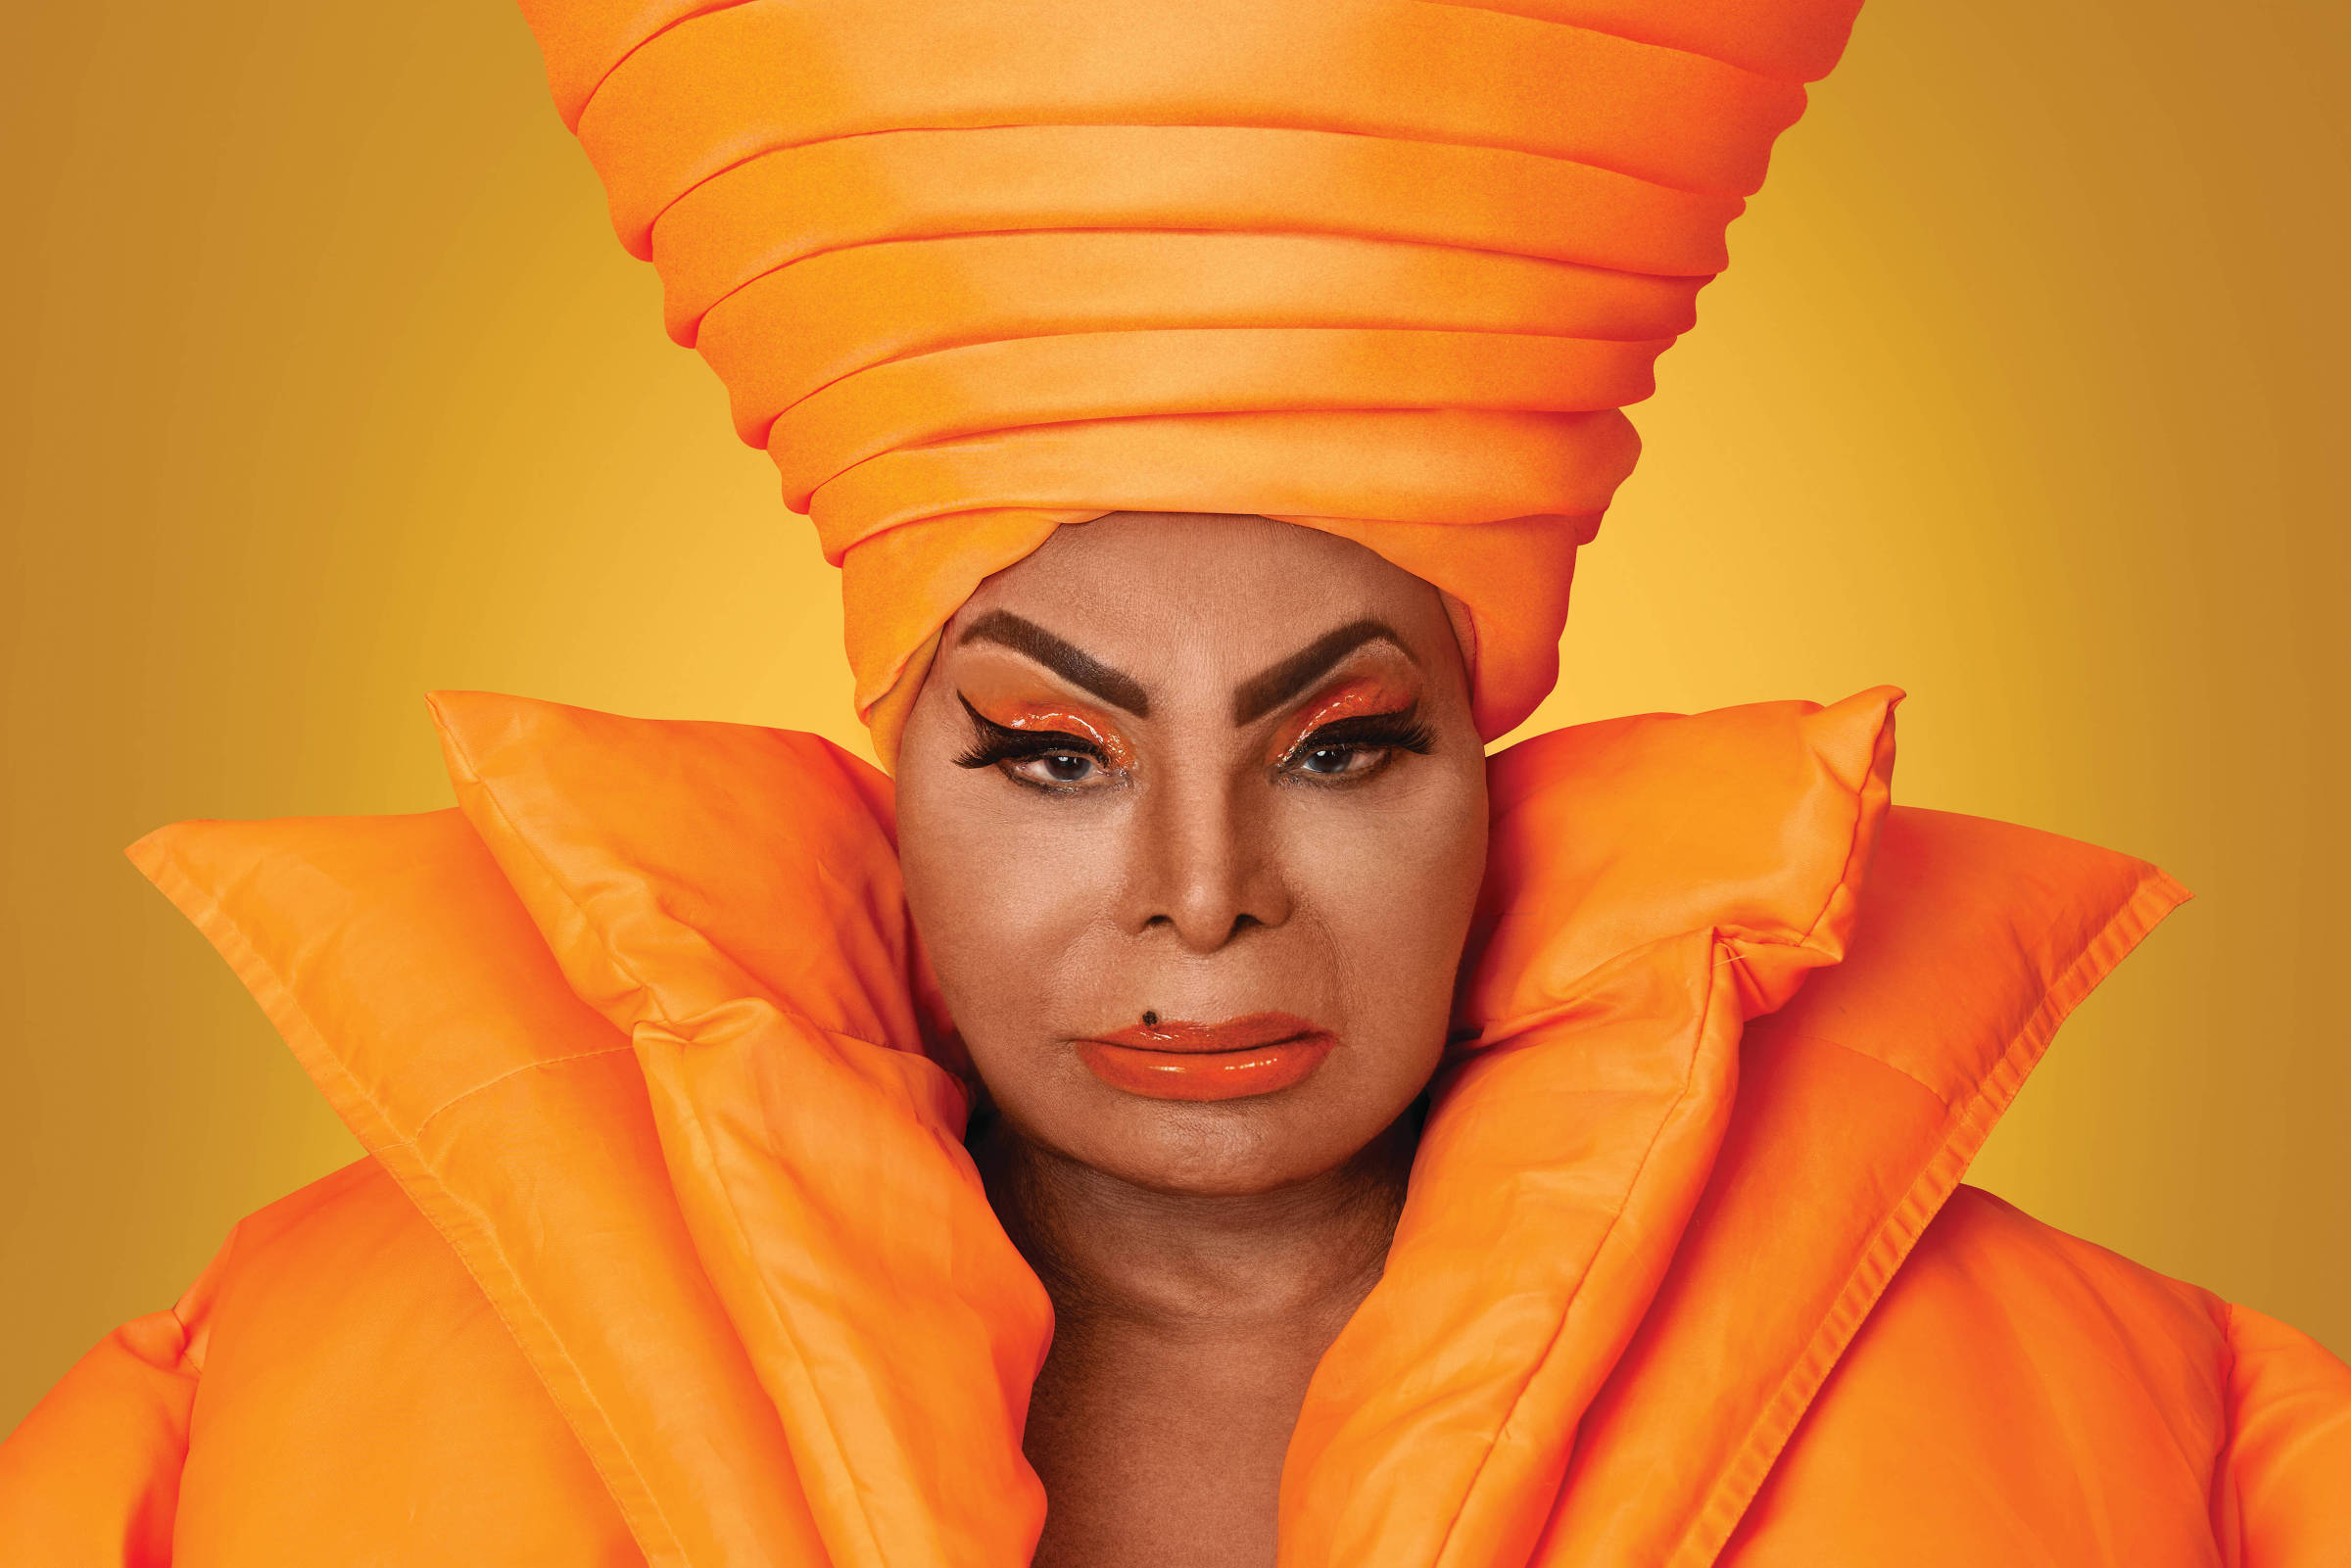 Retrato da cantora Elza Soares. Fotografia retangular horizontal, com fundo alaranjado. A artista brasileira ocupa quase toda a imagem. Ela é uma mulher negra, maquiada, olha para frente e veste roupas laranjas, com destaque para um grande turbante na cabeça.